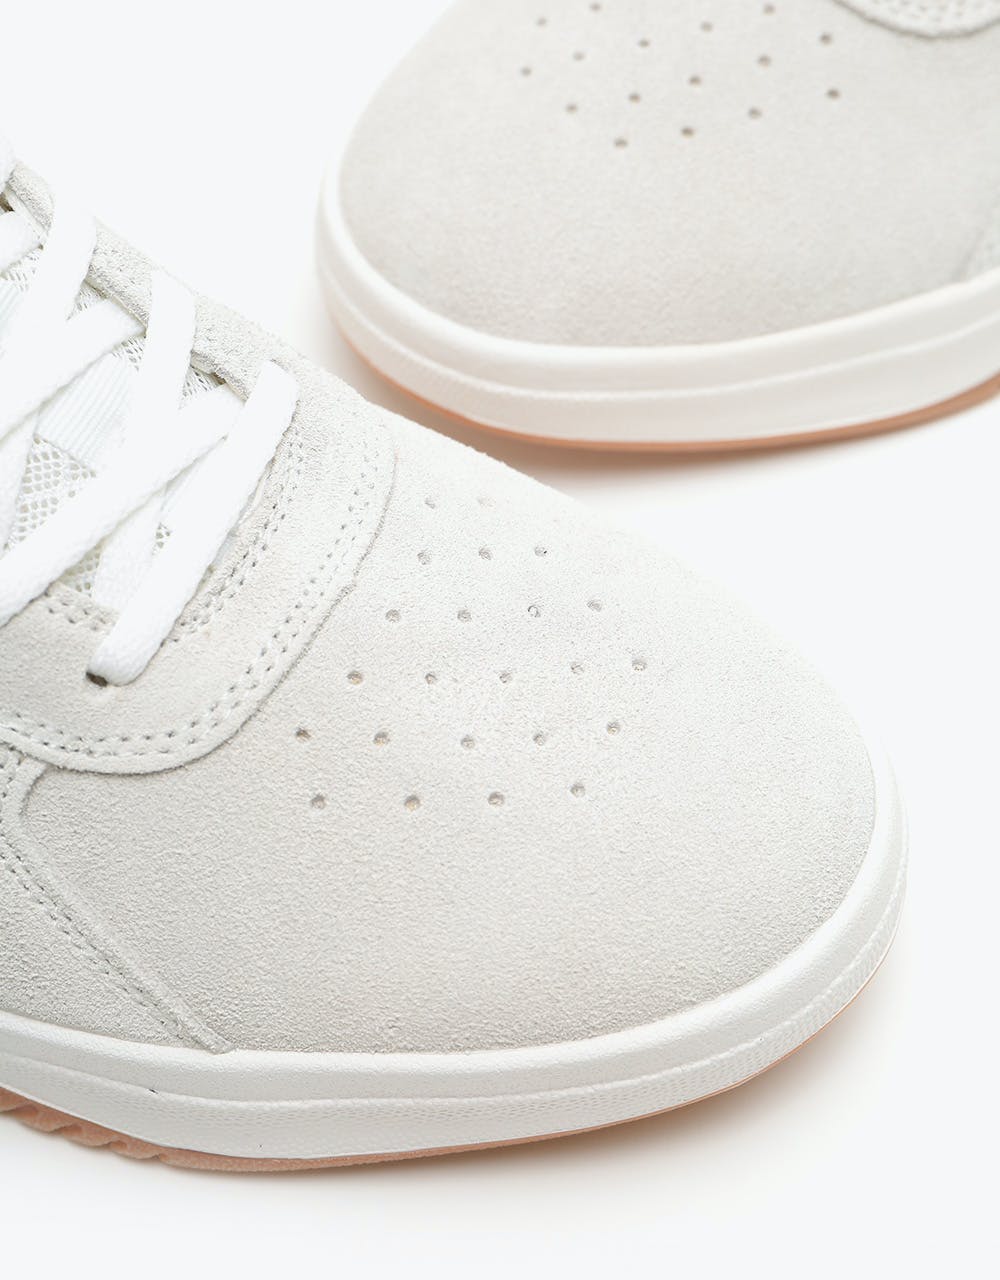 Lakai The Proto Skate Shoes - White/Gold Suede